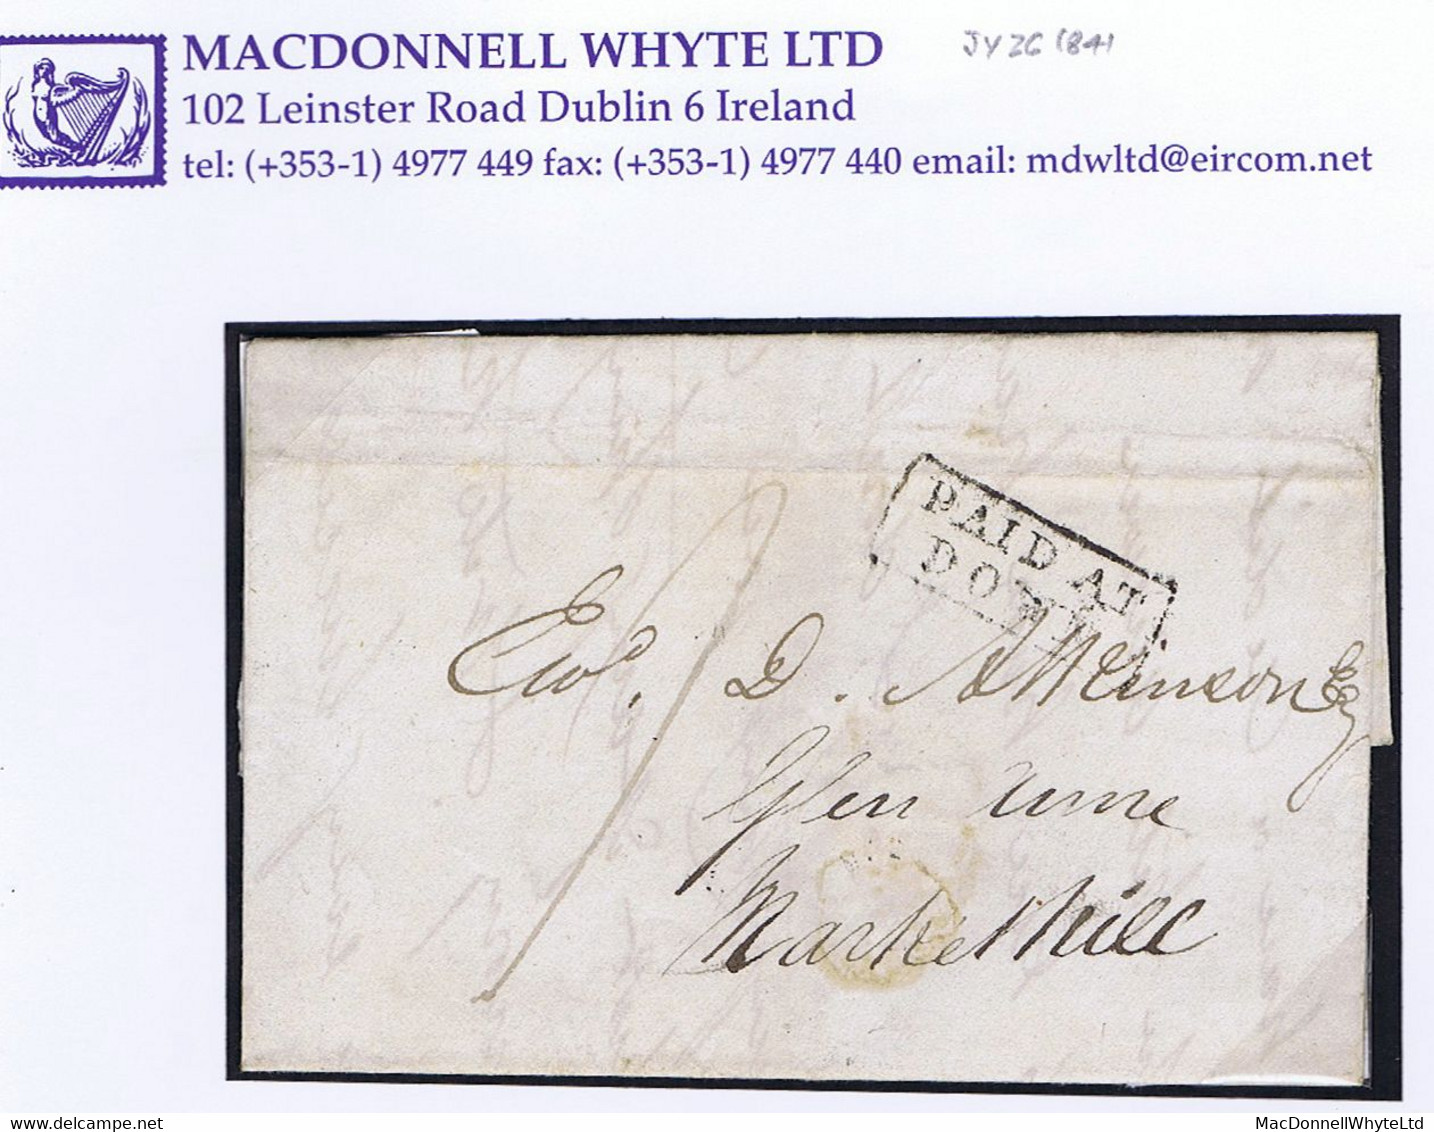 Ireland Down Uniform Penny Post 1841 Letter To Markethill Paid "1" Boxed PAID AT/DOWN, Cds DOWN JY 26 1841 - Préphilatélie